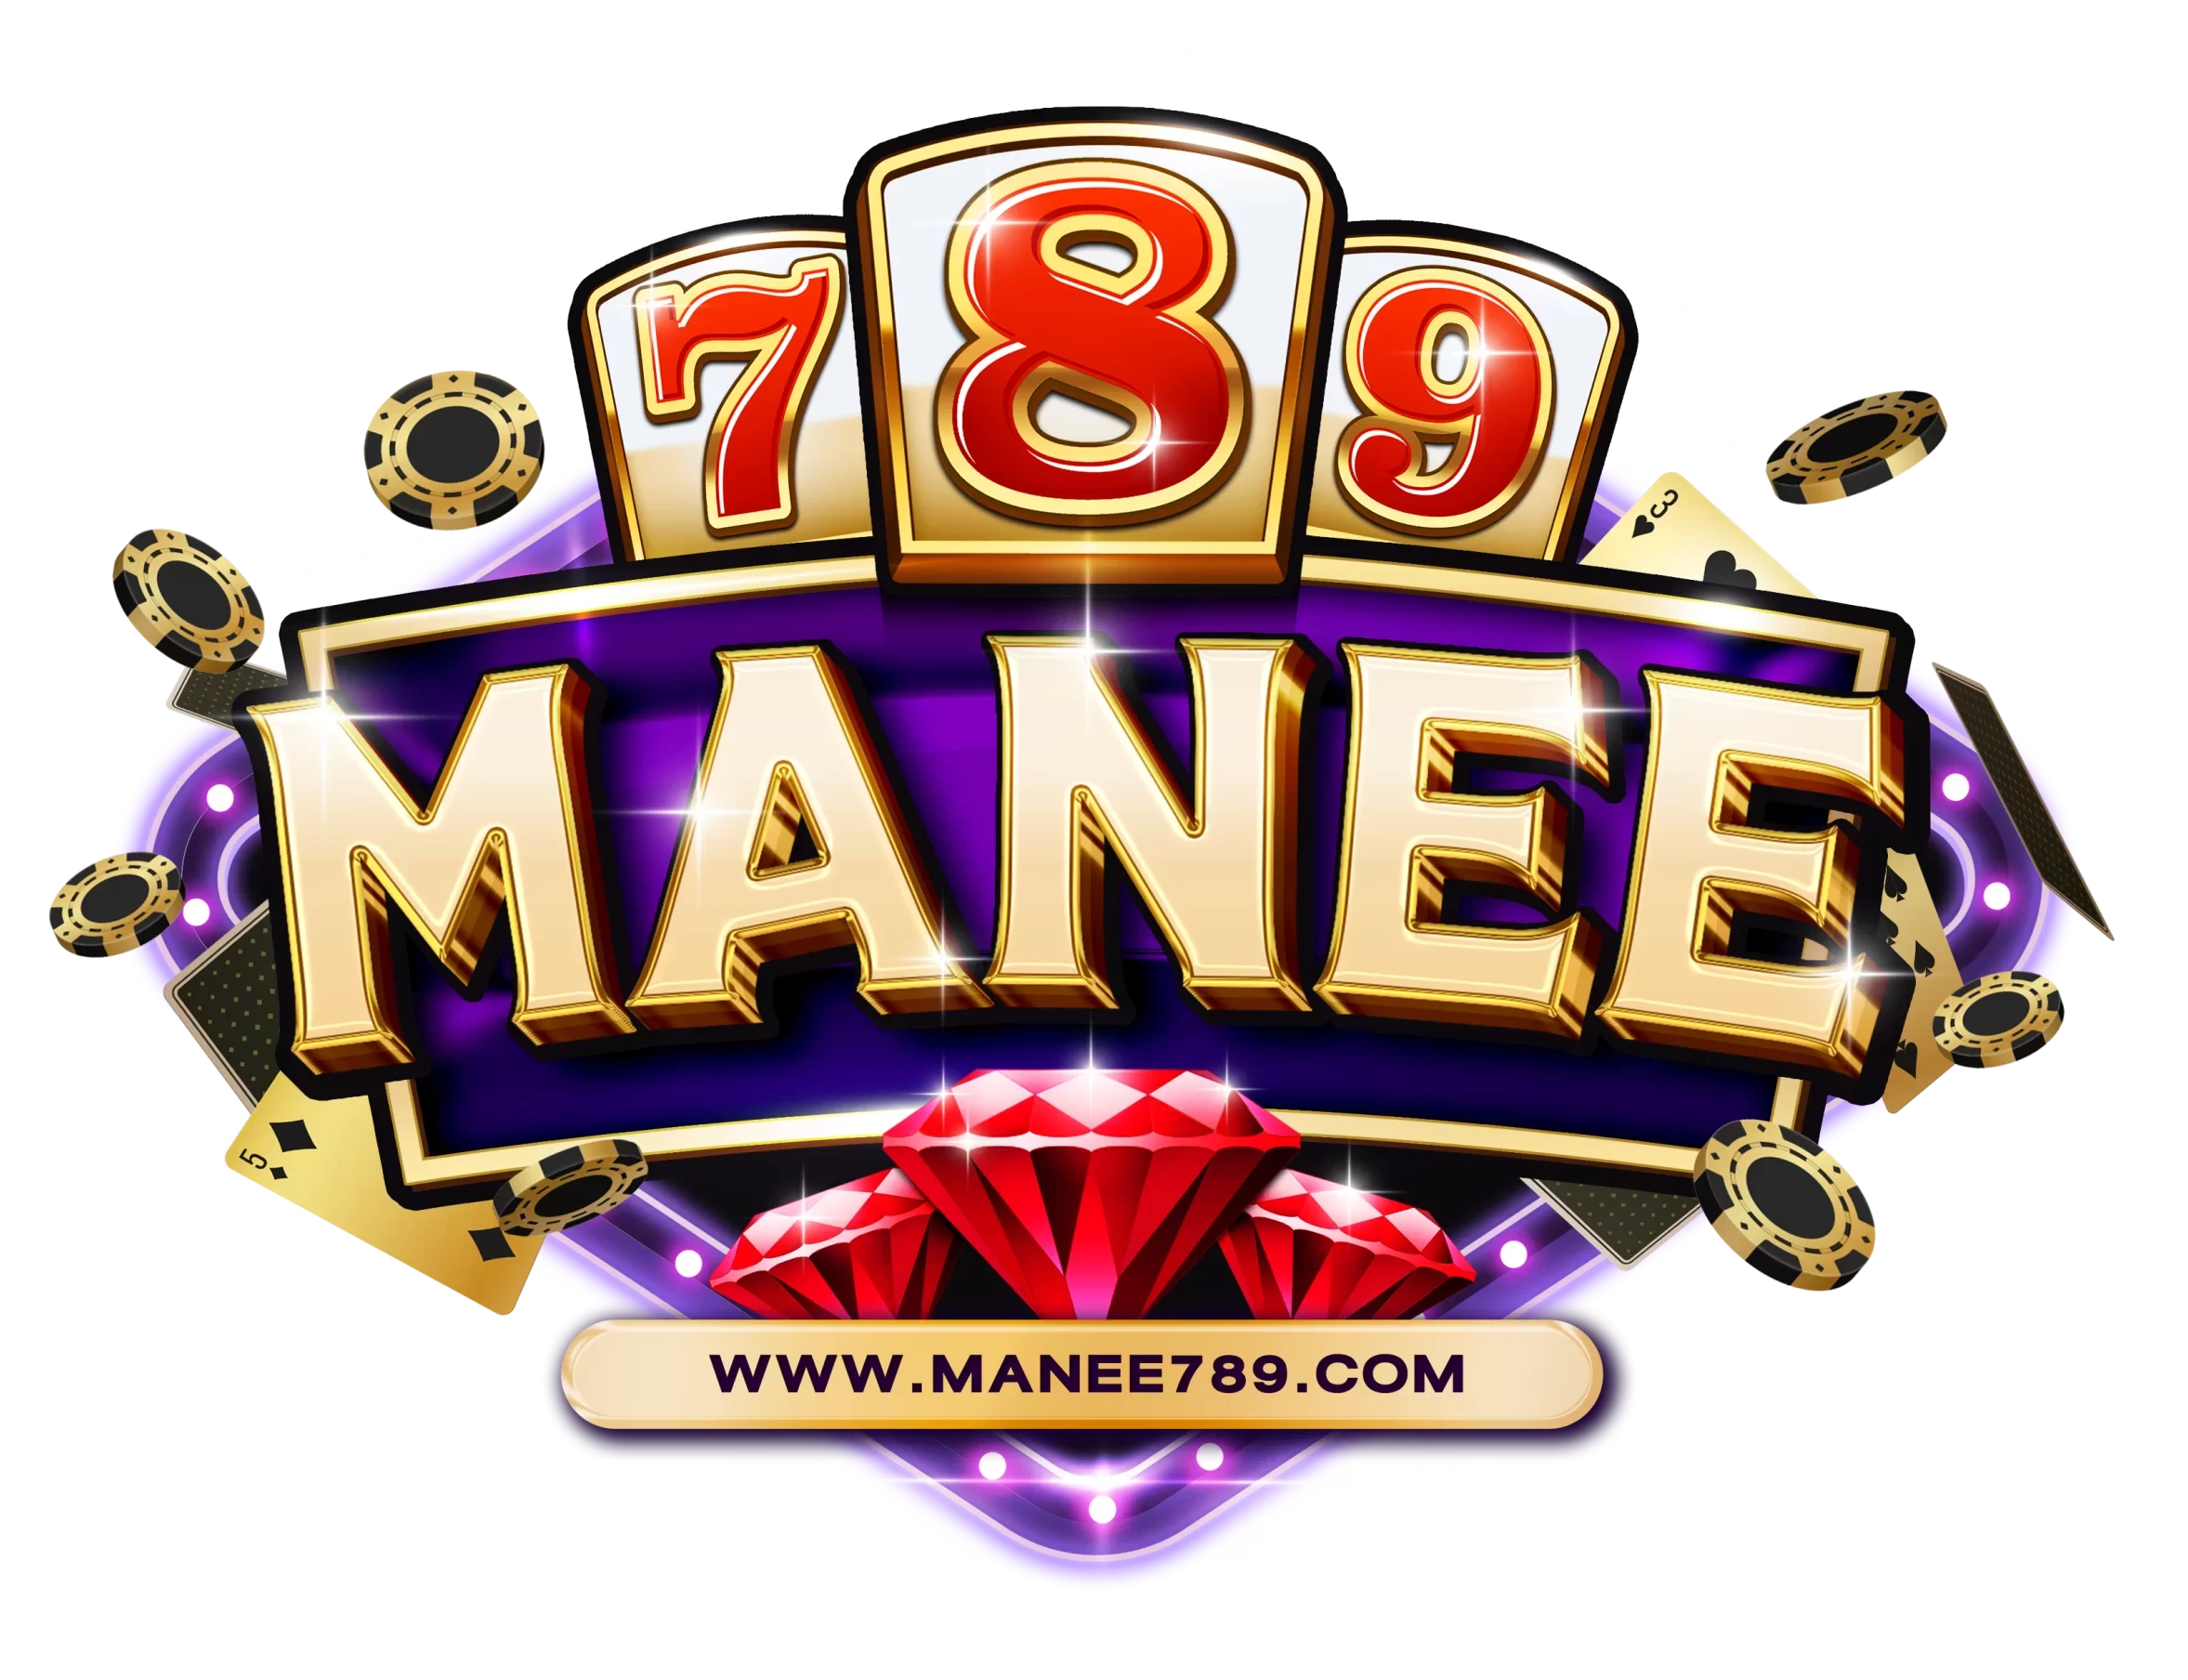 manee789.com